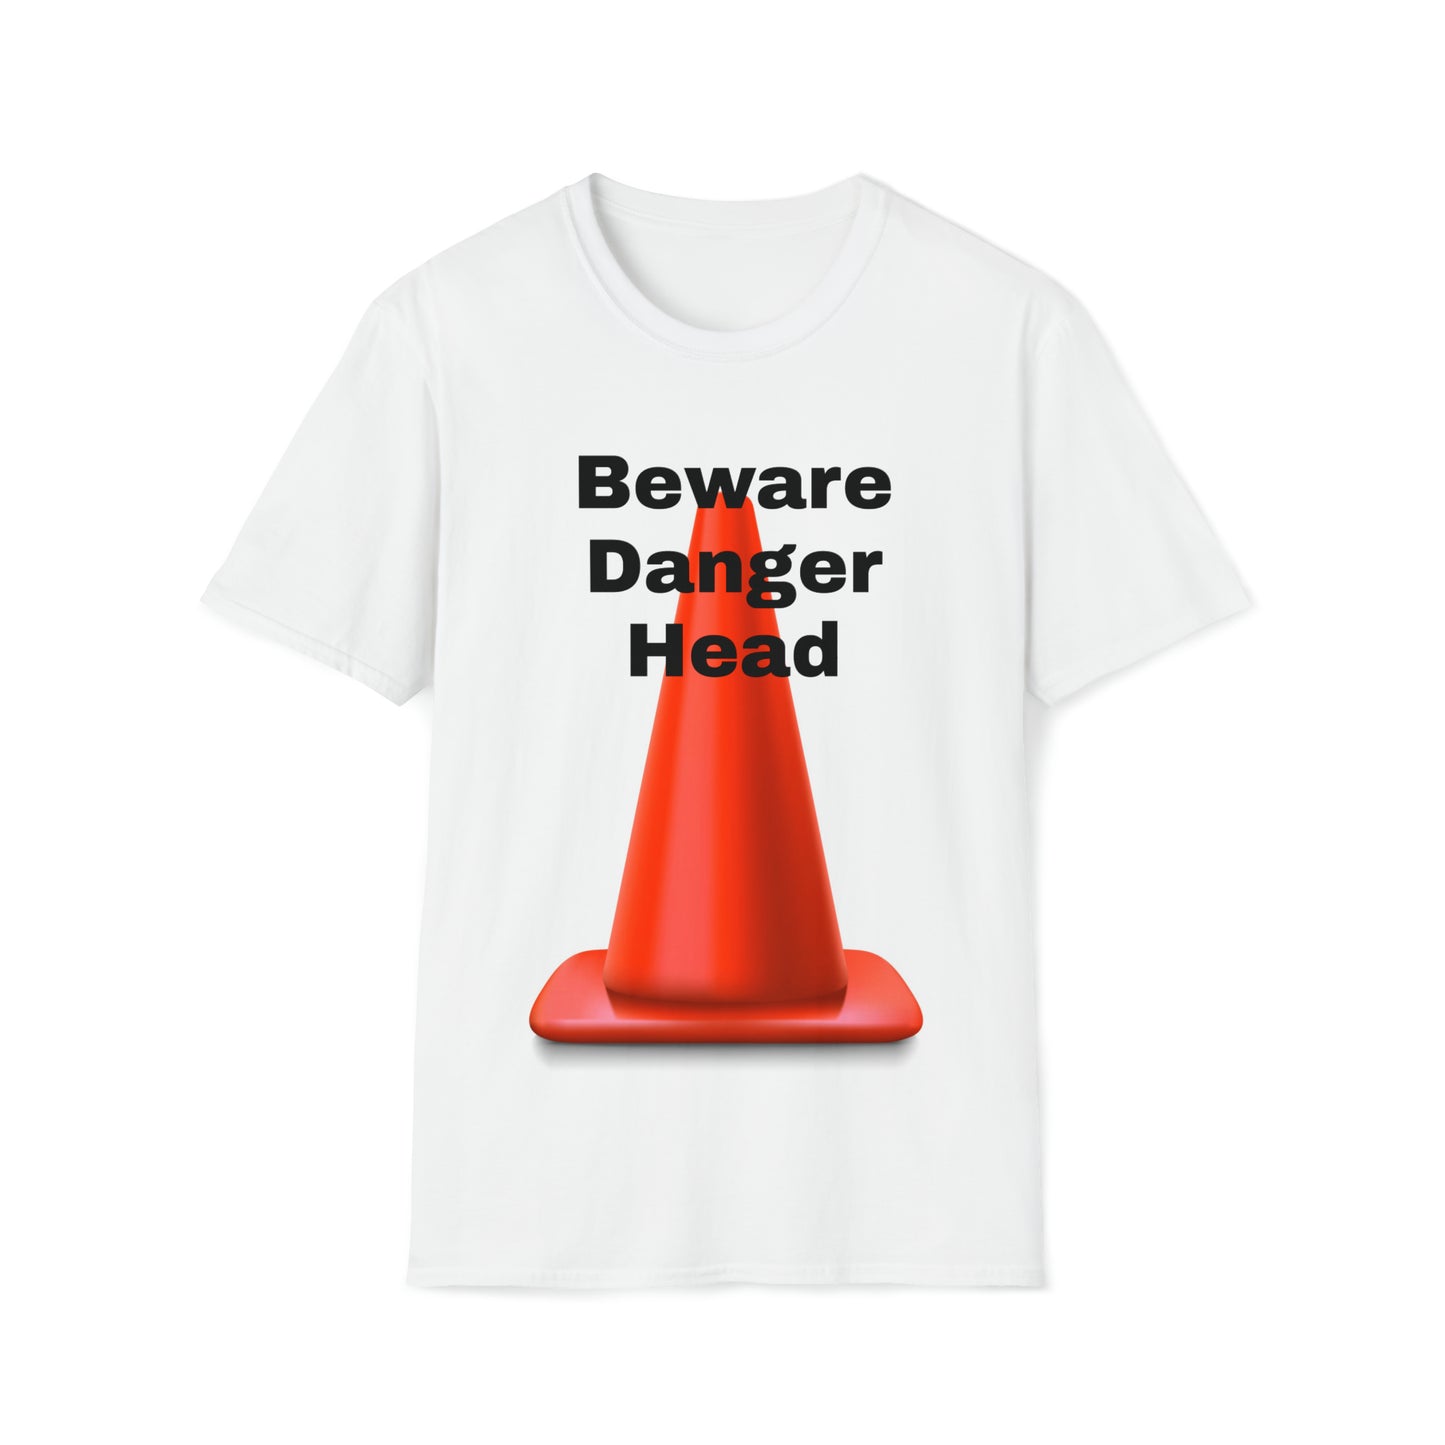 Beware Danger Head T-shirt